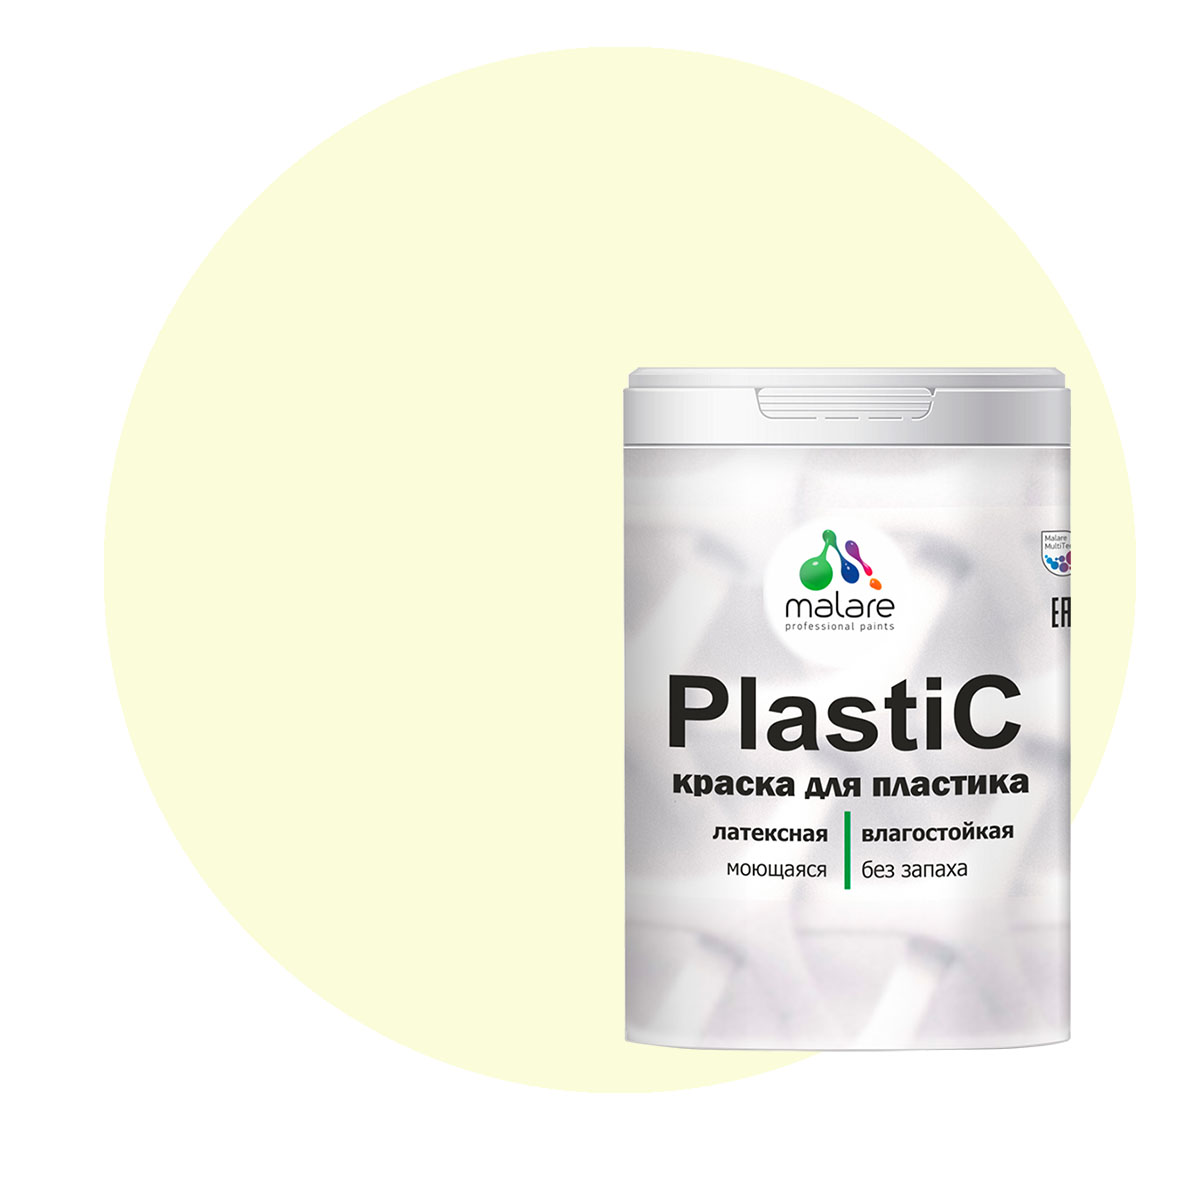 Краска Malare PlastiC для пластика, ПВХ, для сайдинга, слоновая кость 1 кг. краска malare plastic для пластика пвх для сайдинга слоновая кость 10 кг